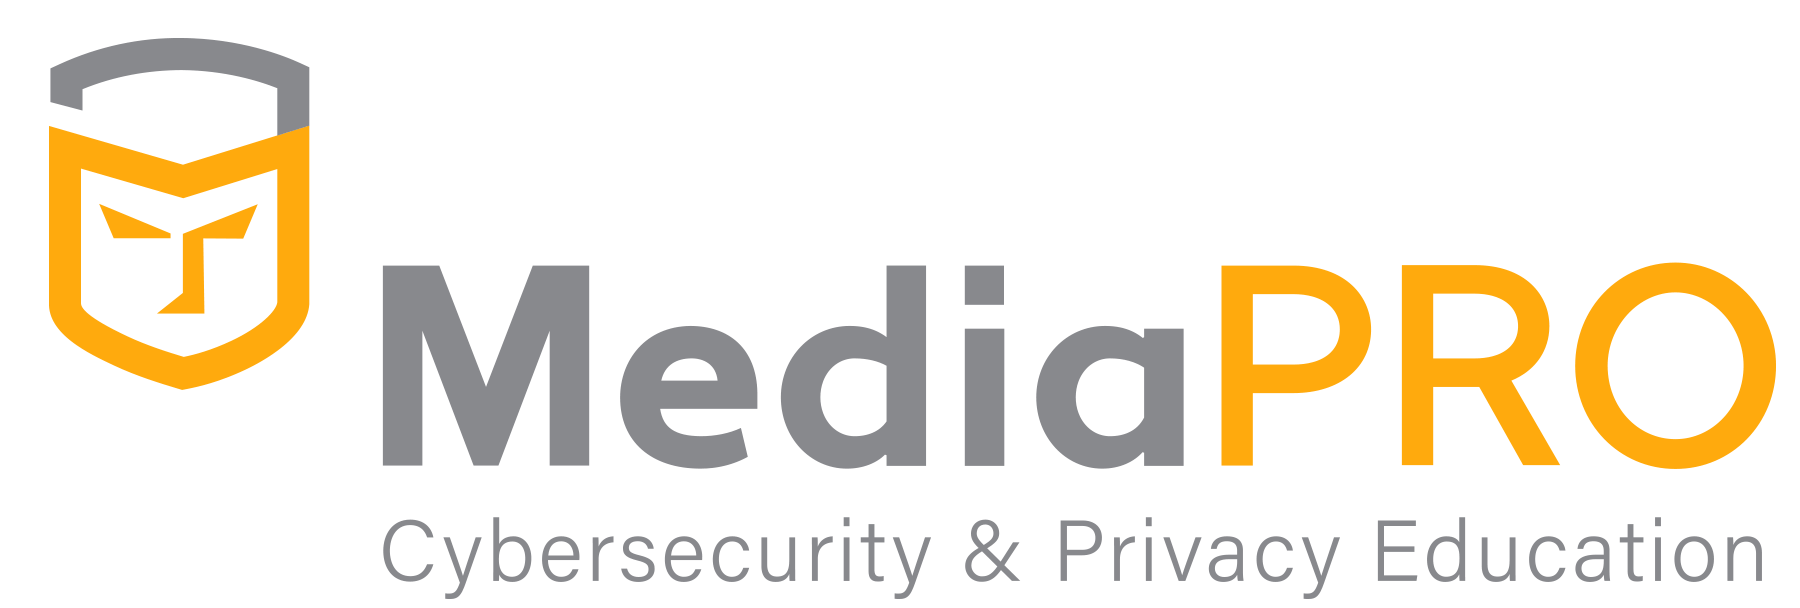 MediaPRO logo